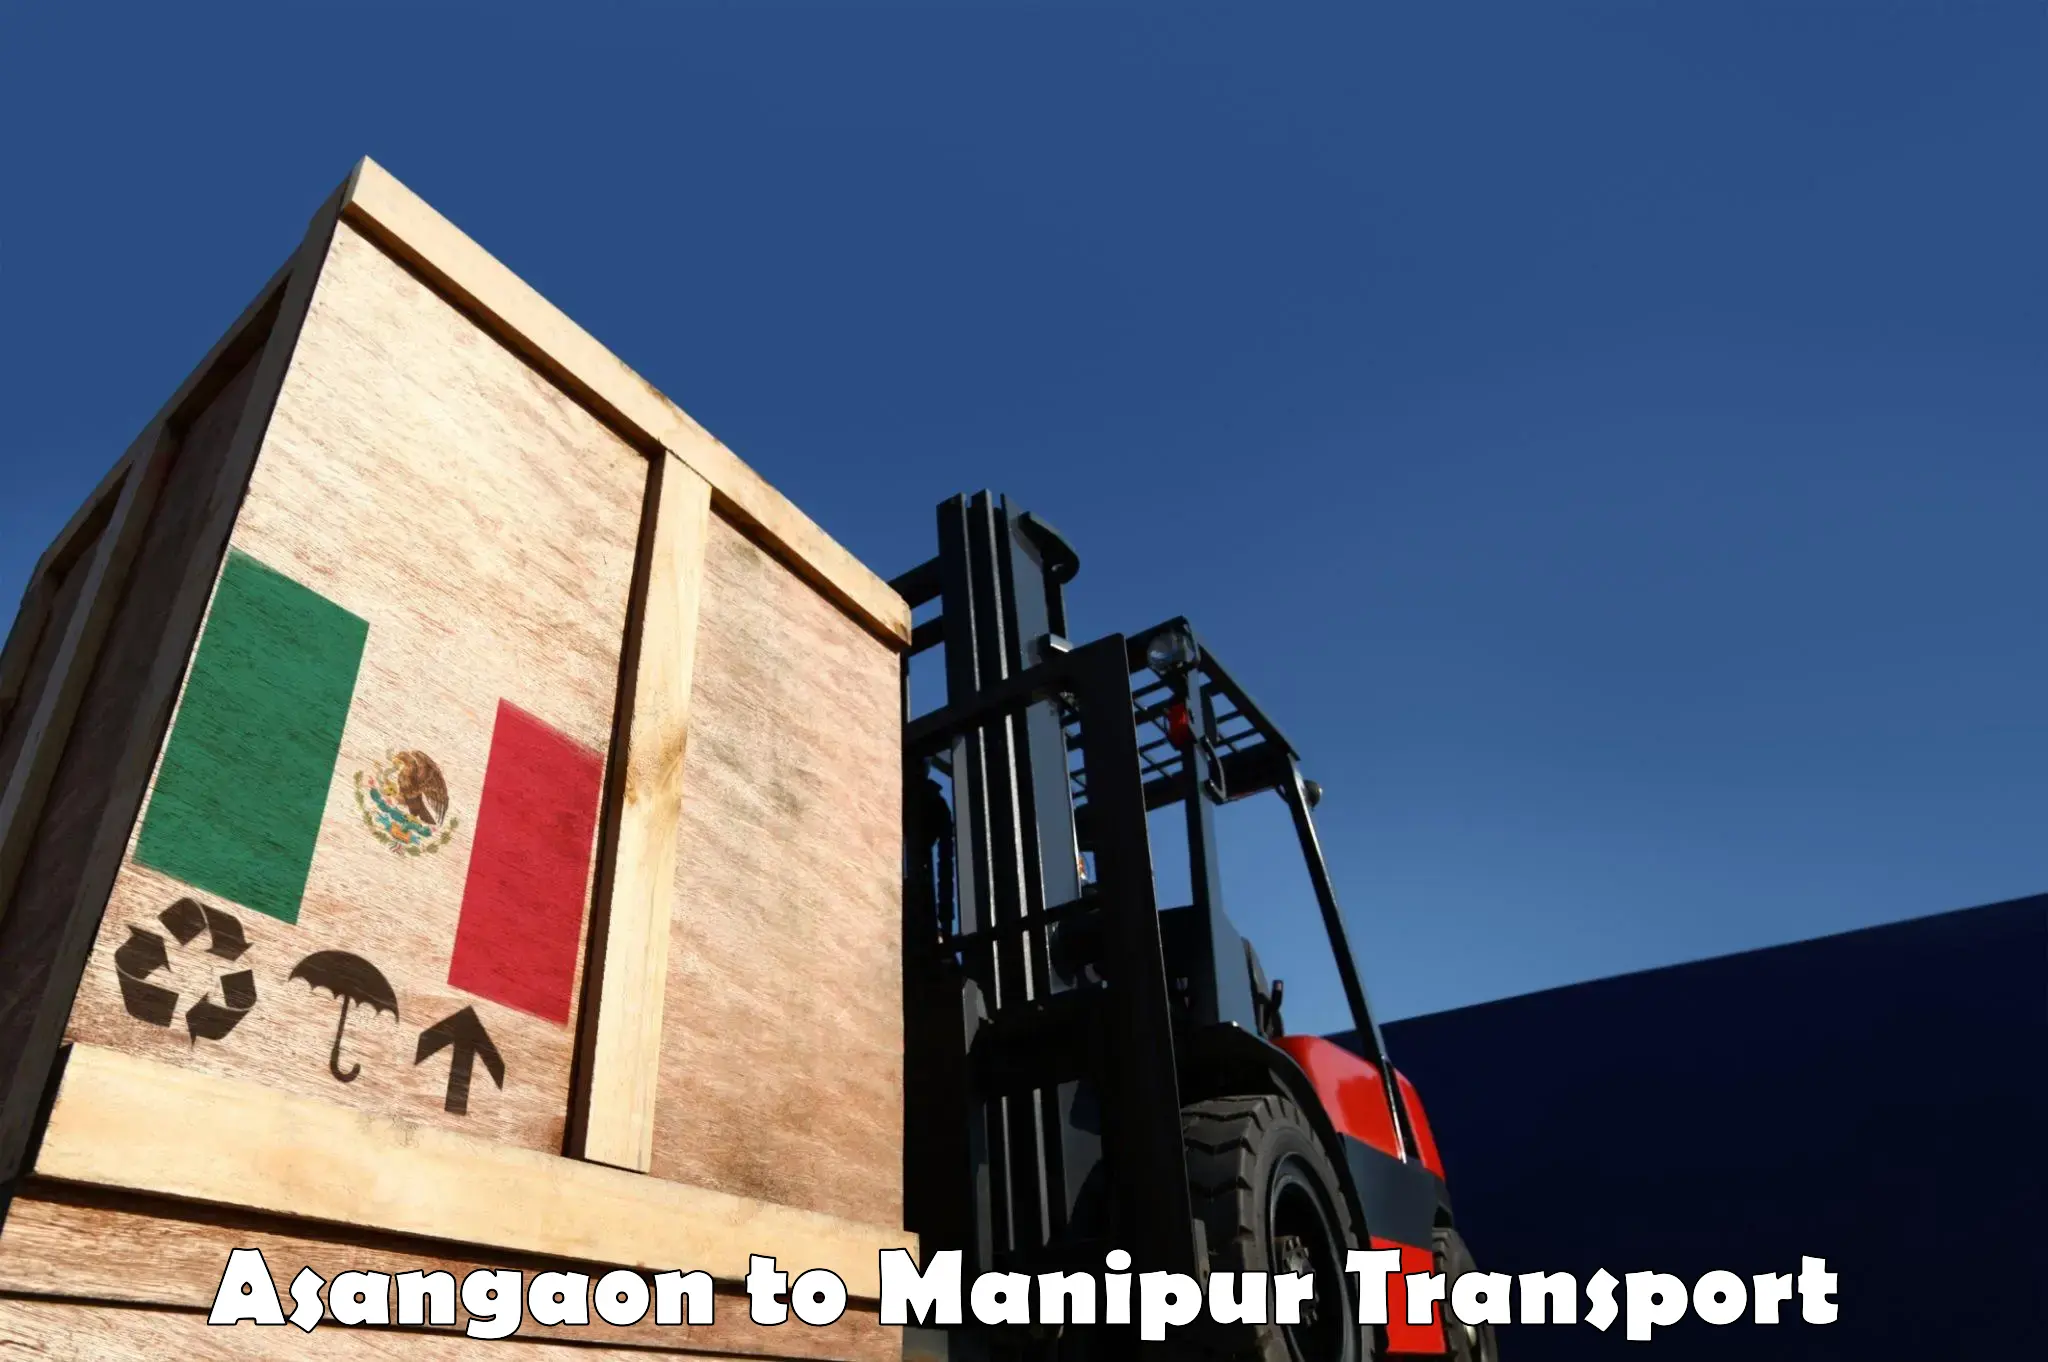 Bike transport service Asangaon to NIT Manipur